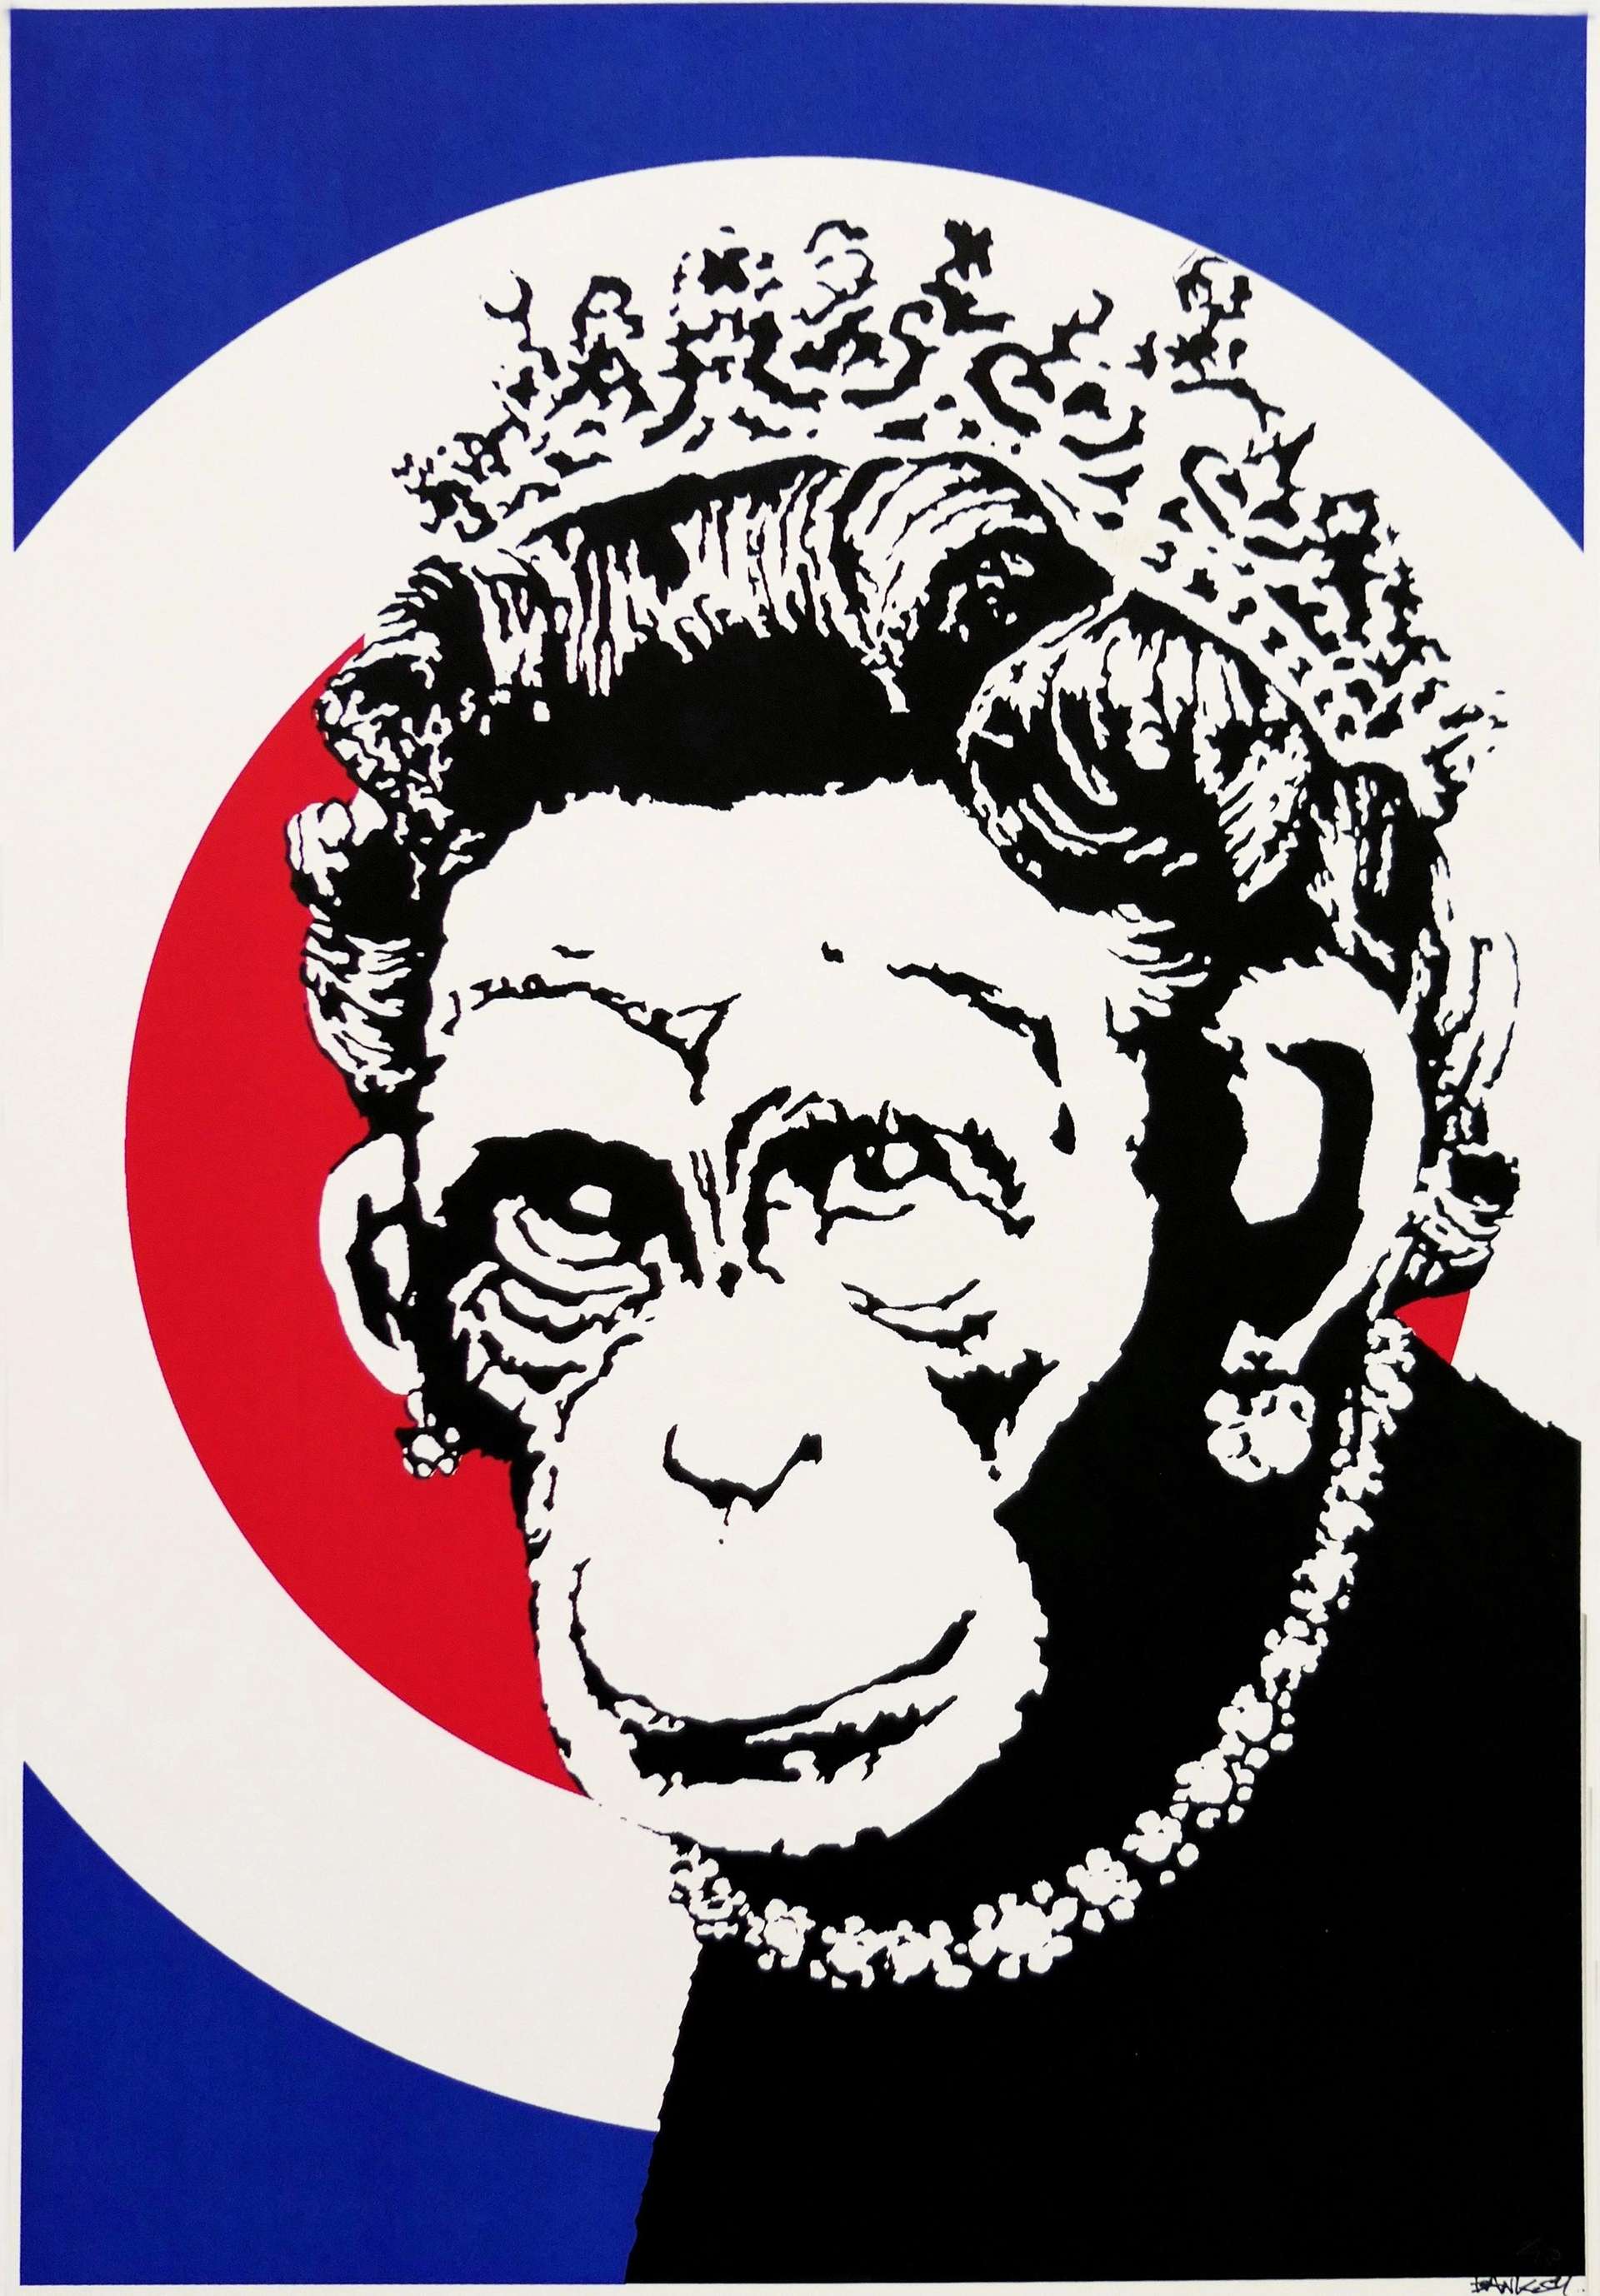 Monkey Queen - Signed Print by Banksy 2003 - MyArtBroker